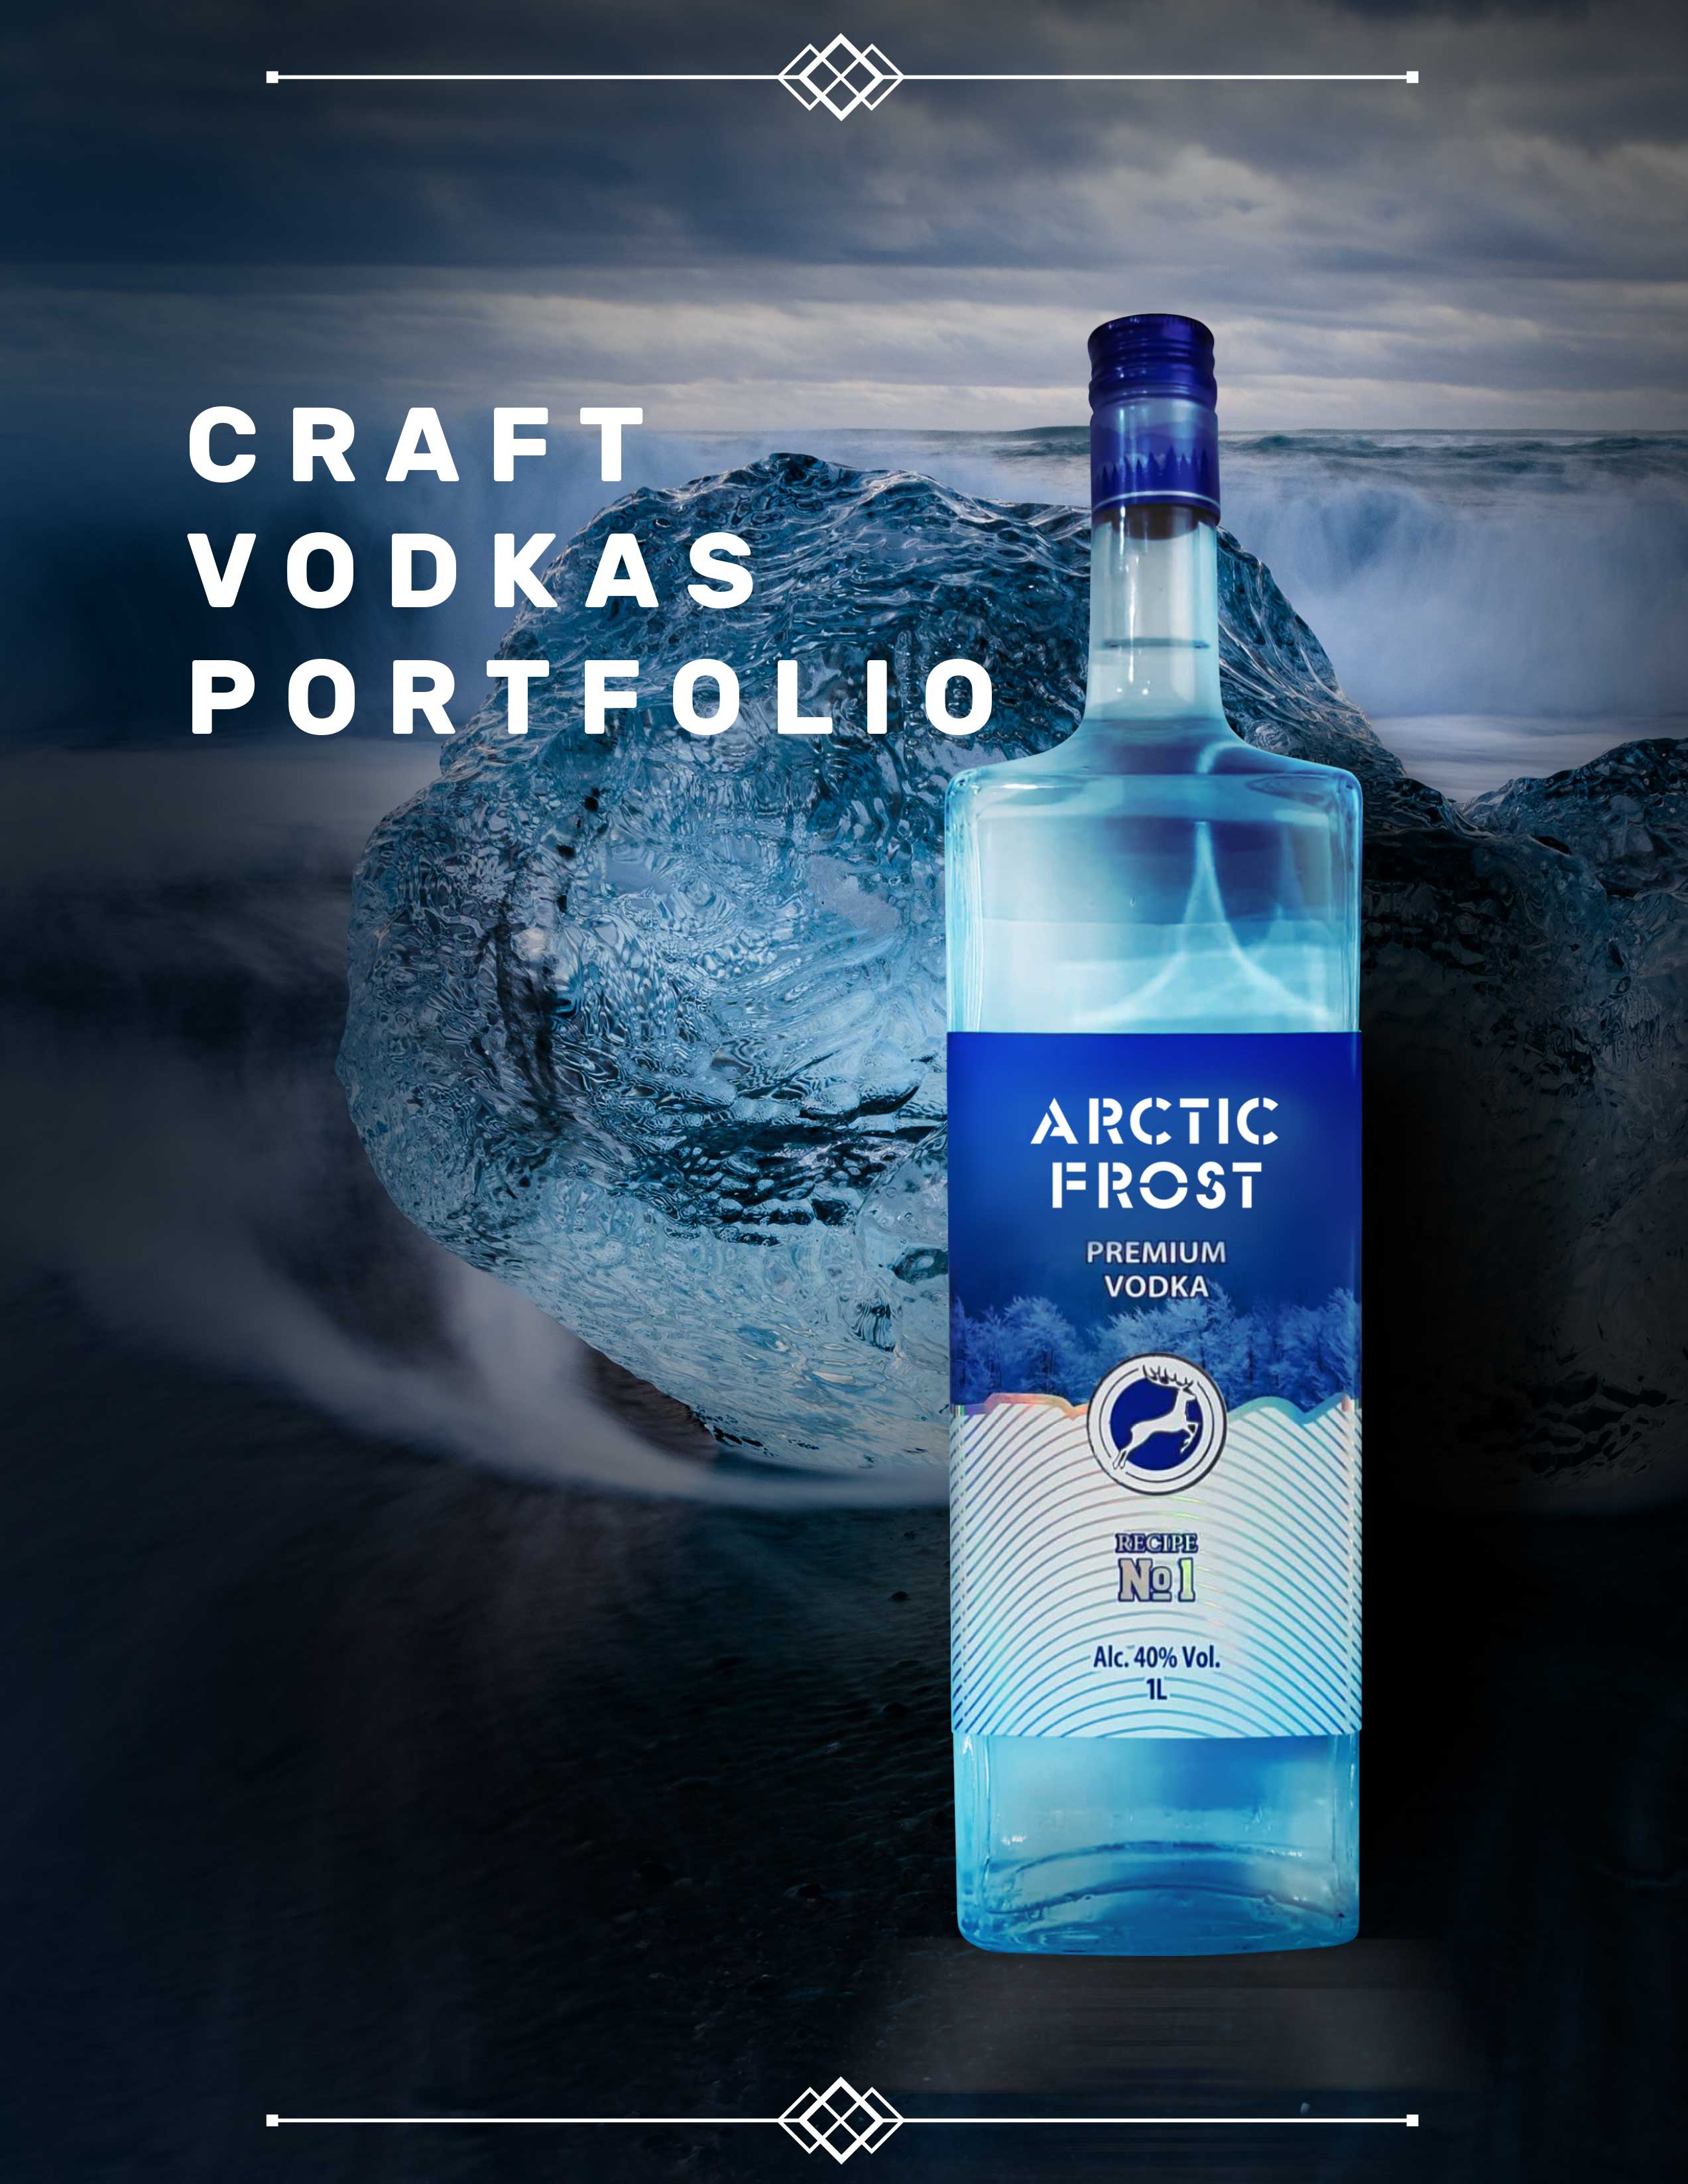 Arctic Frost vodka